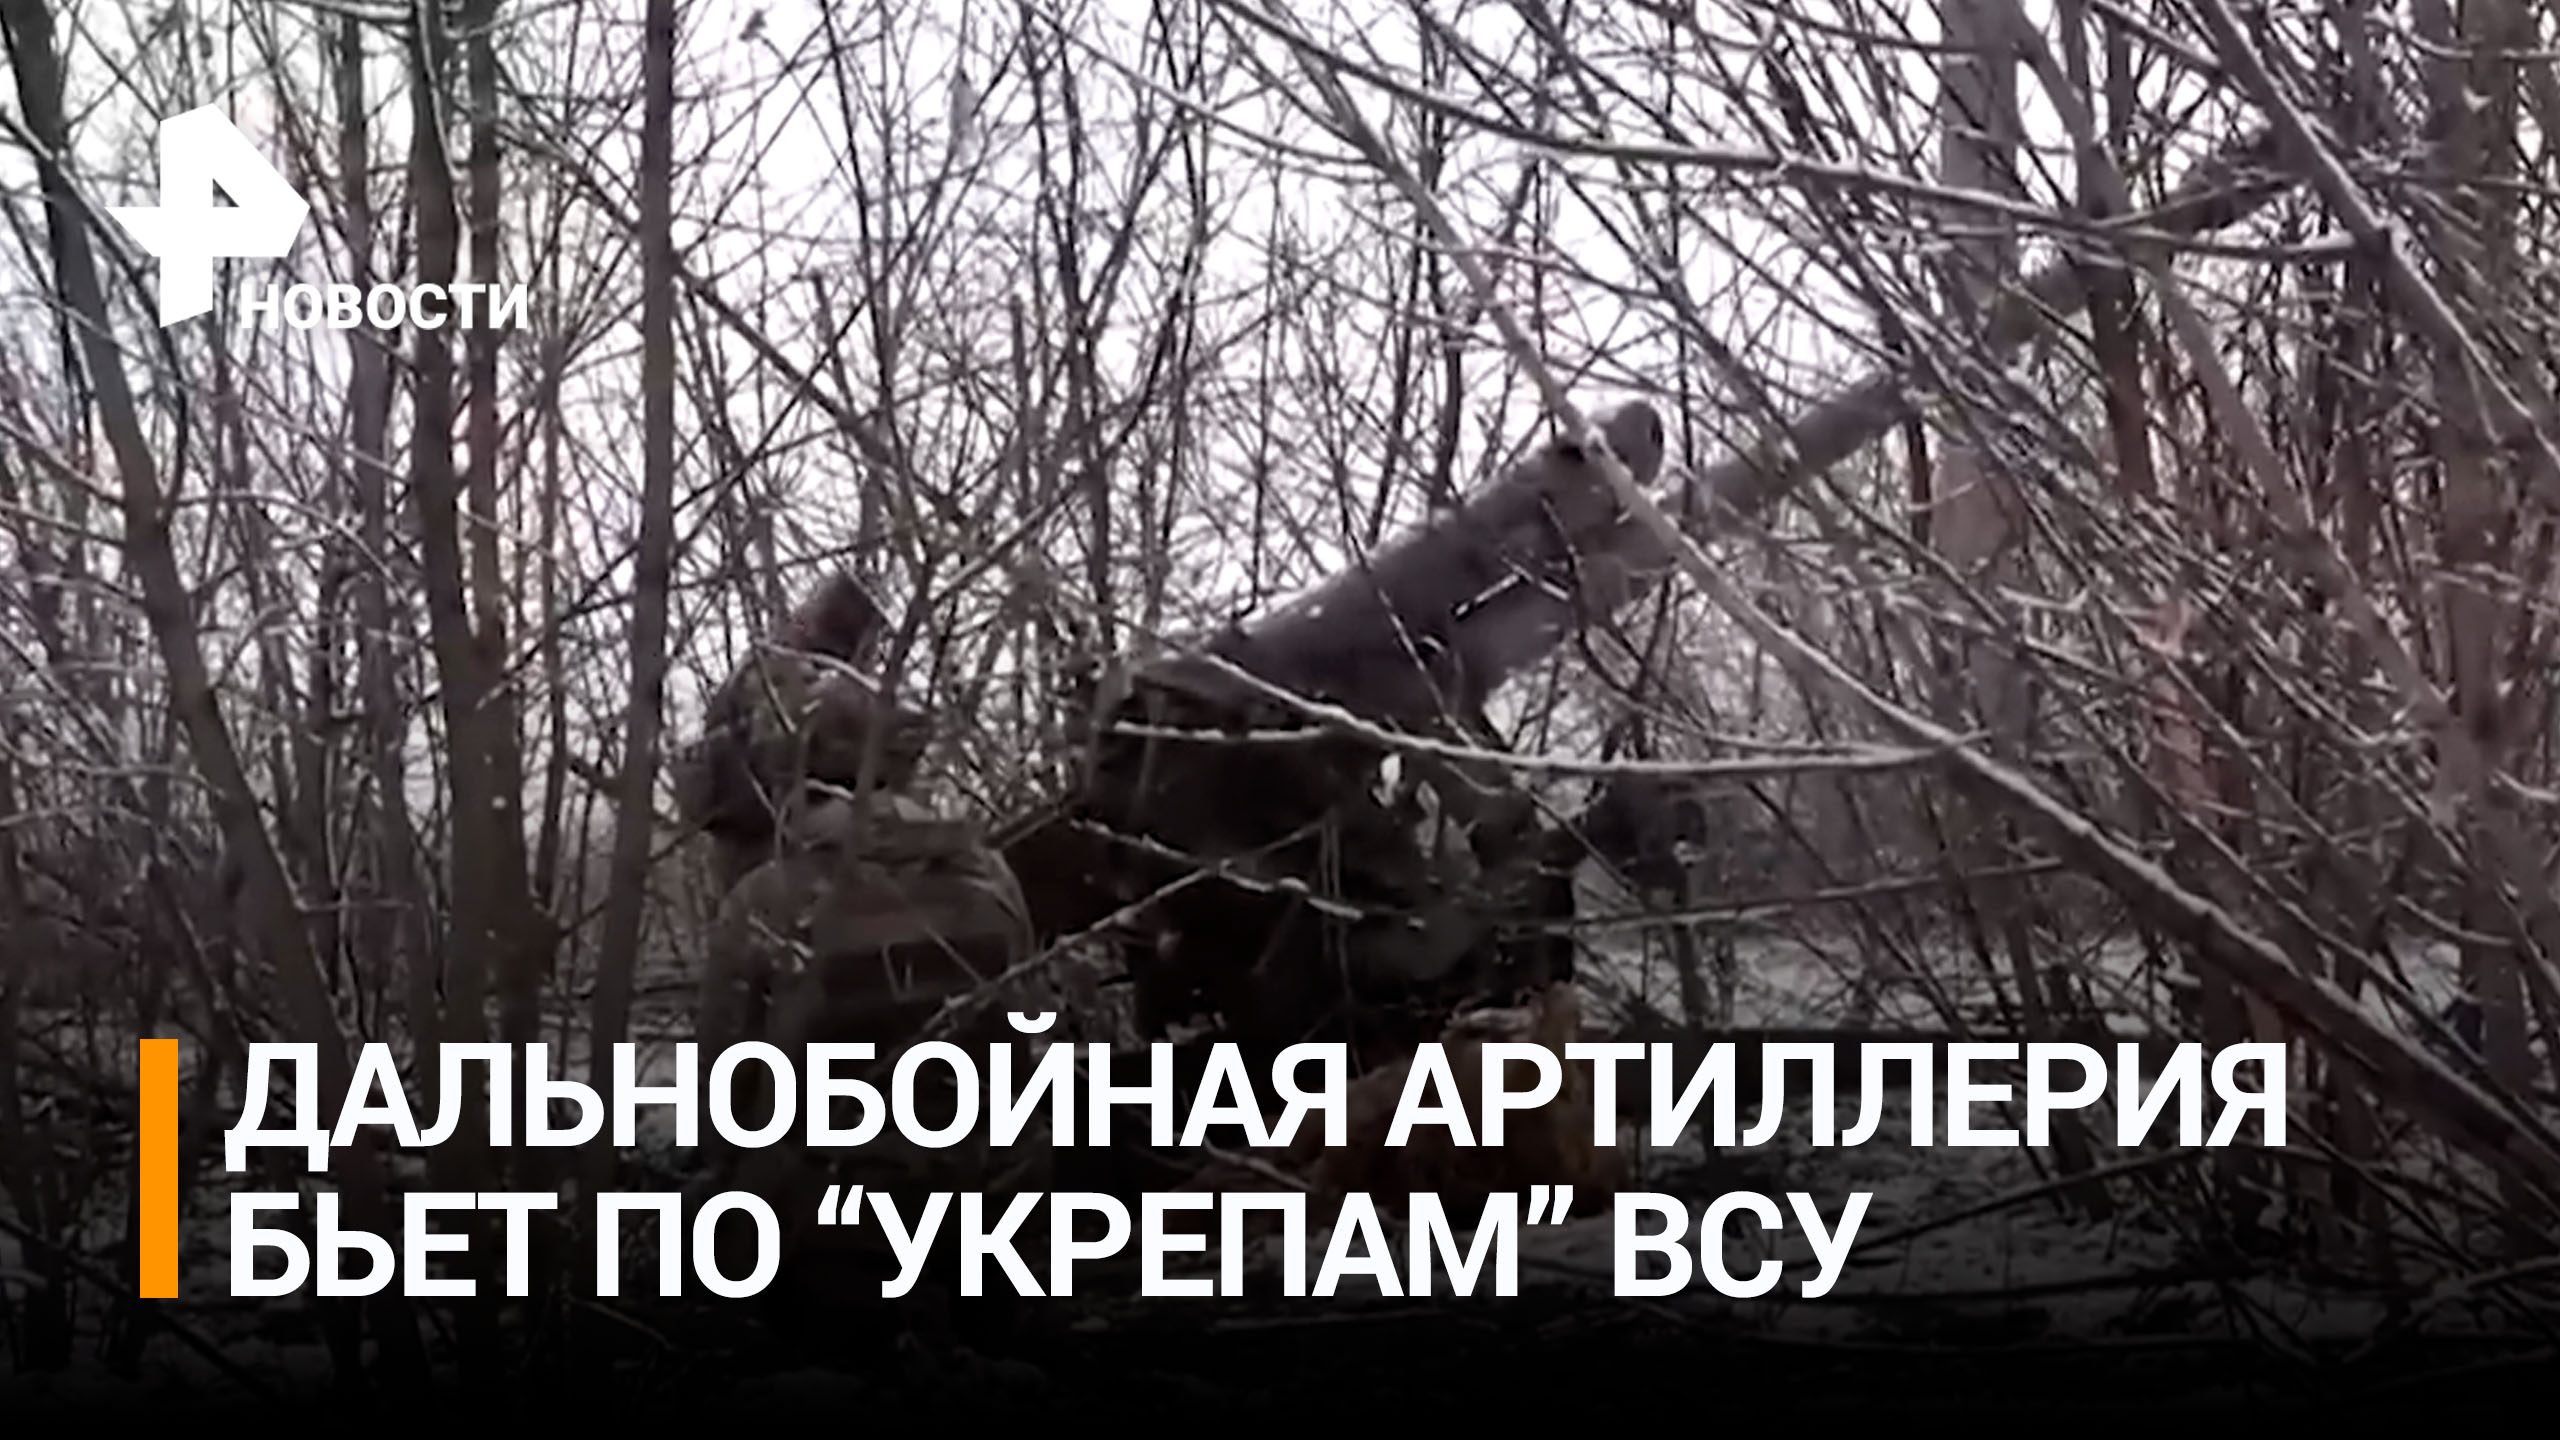 Российские дальнобойные орудия уничтожили опорный пункт ВСУ / РЕН Новости